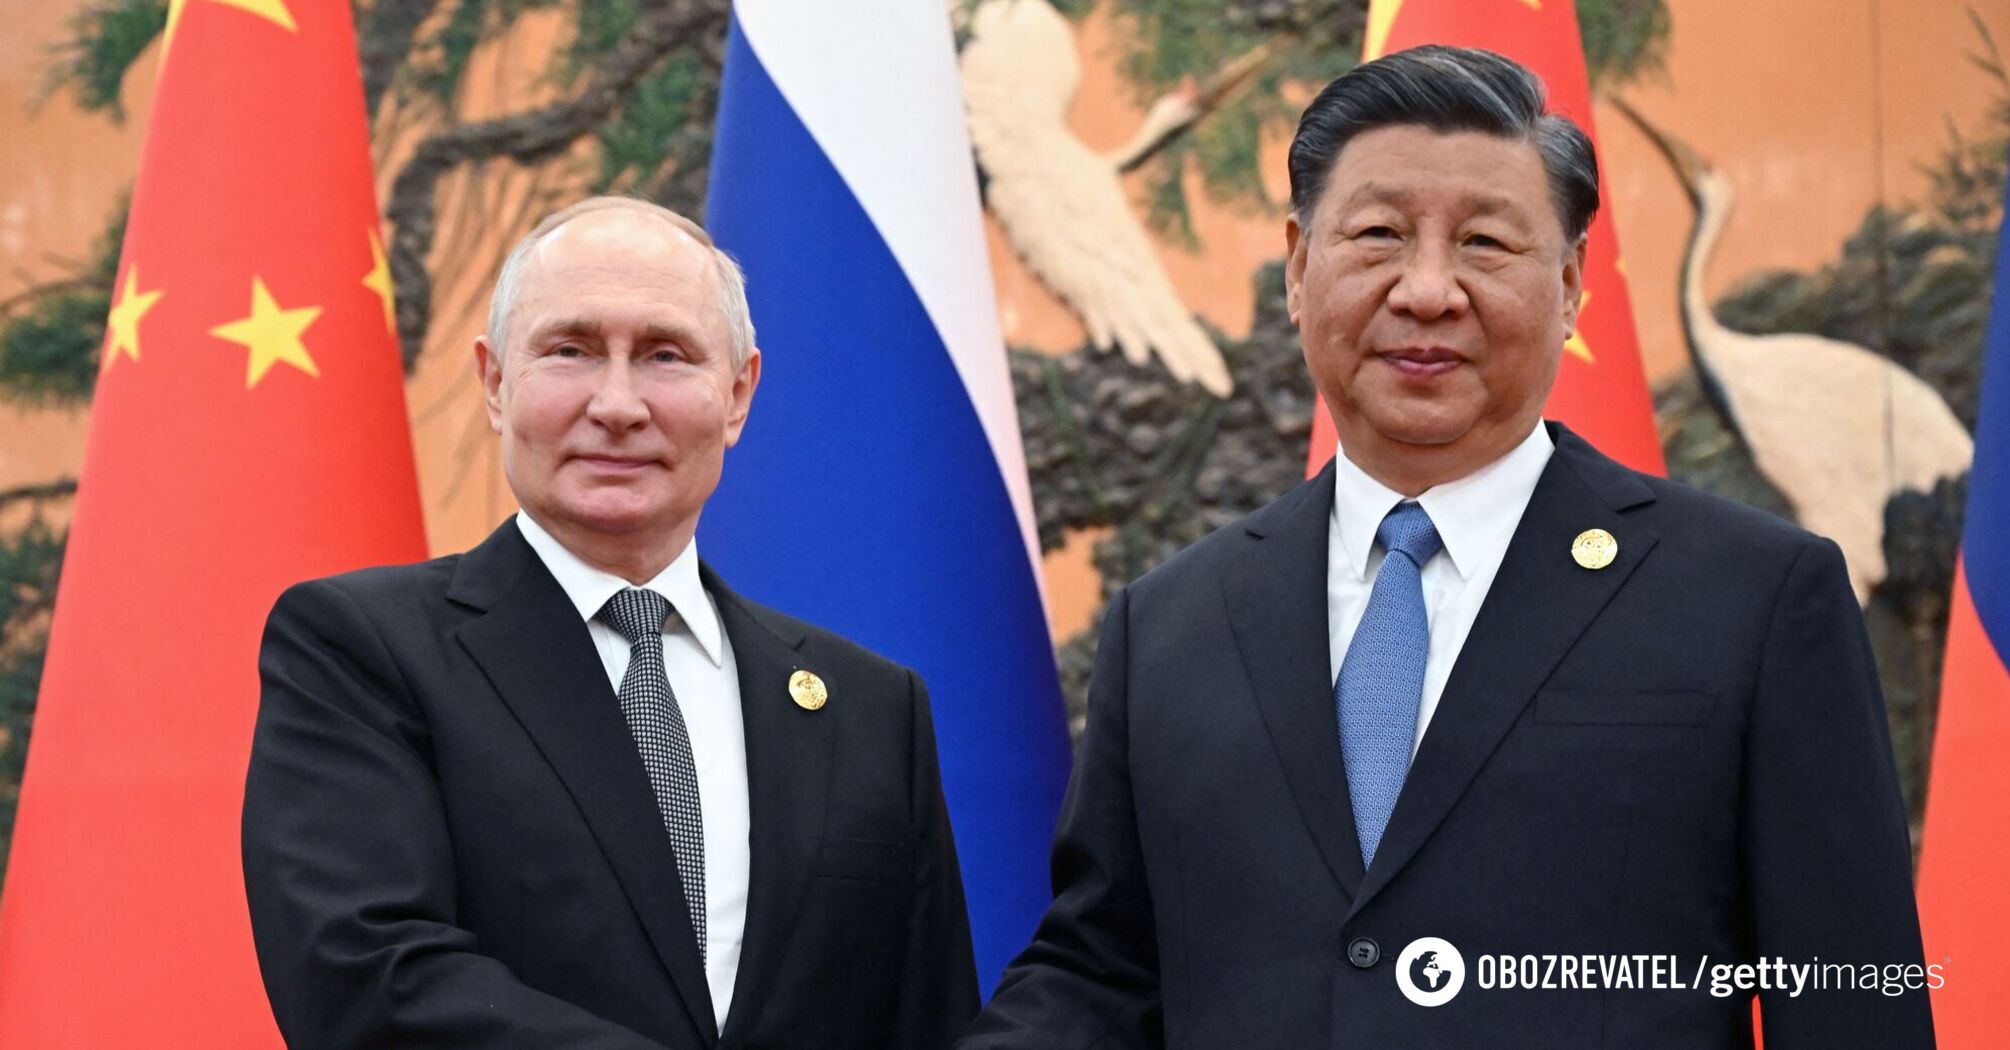 Wielka Brytania twierdzi, że sojusz Rosji z Chinami stanowi 'bezpośrednie zagrożenie'